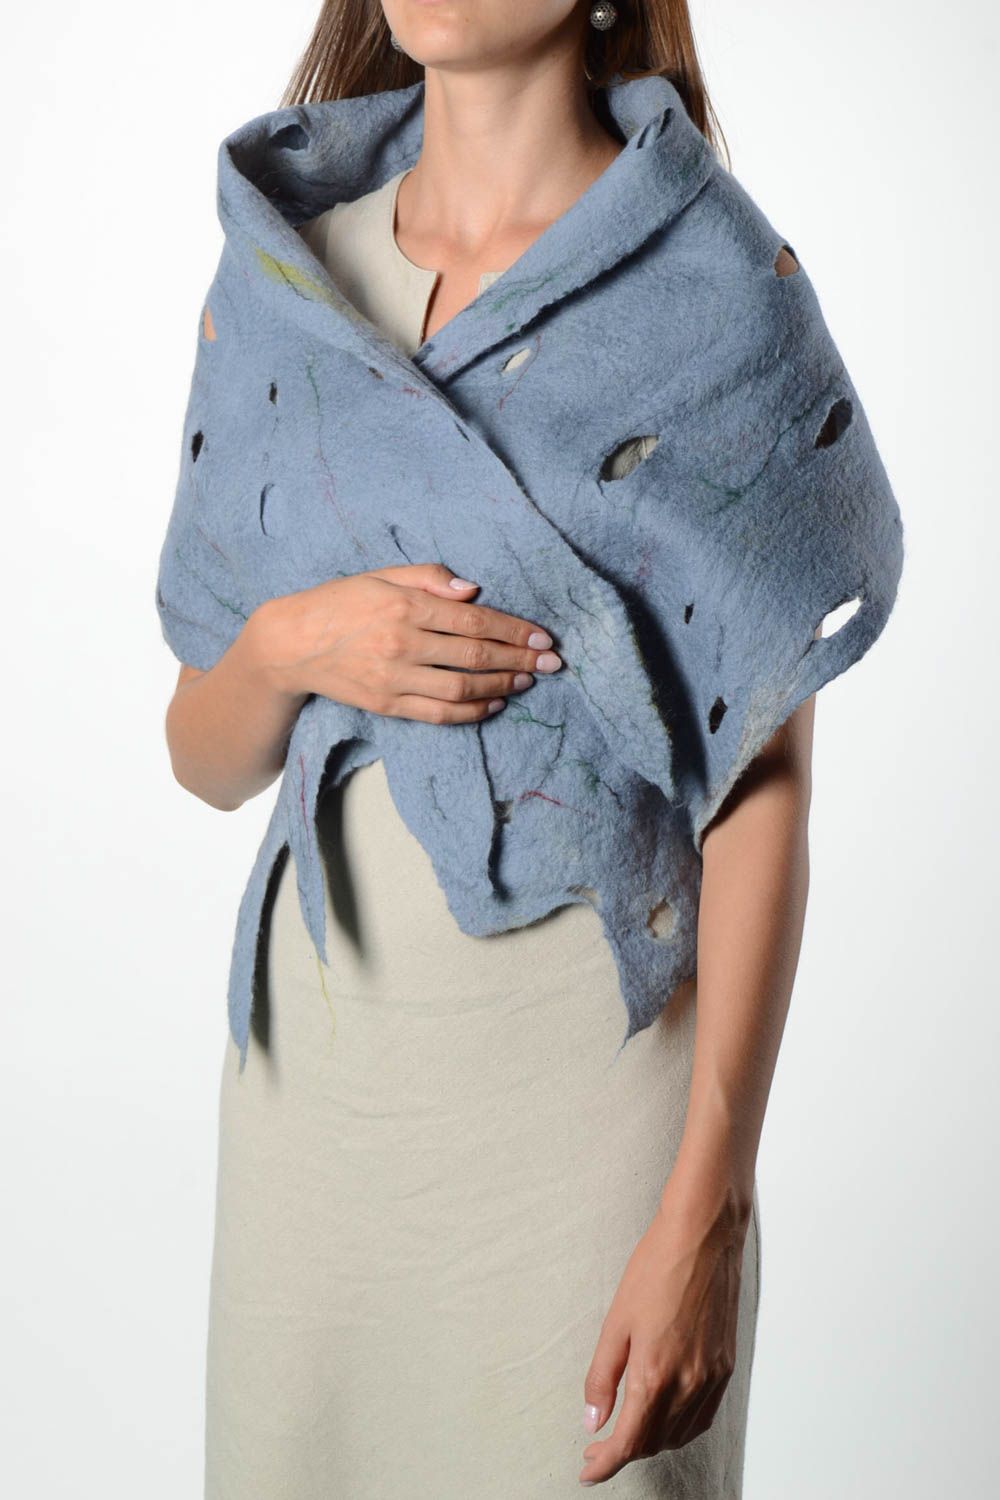 Handmade gefilzter Schal Frauen Accessoire Geschenk für Frau Damen Schal blau foto 1